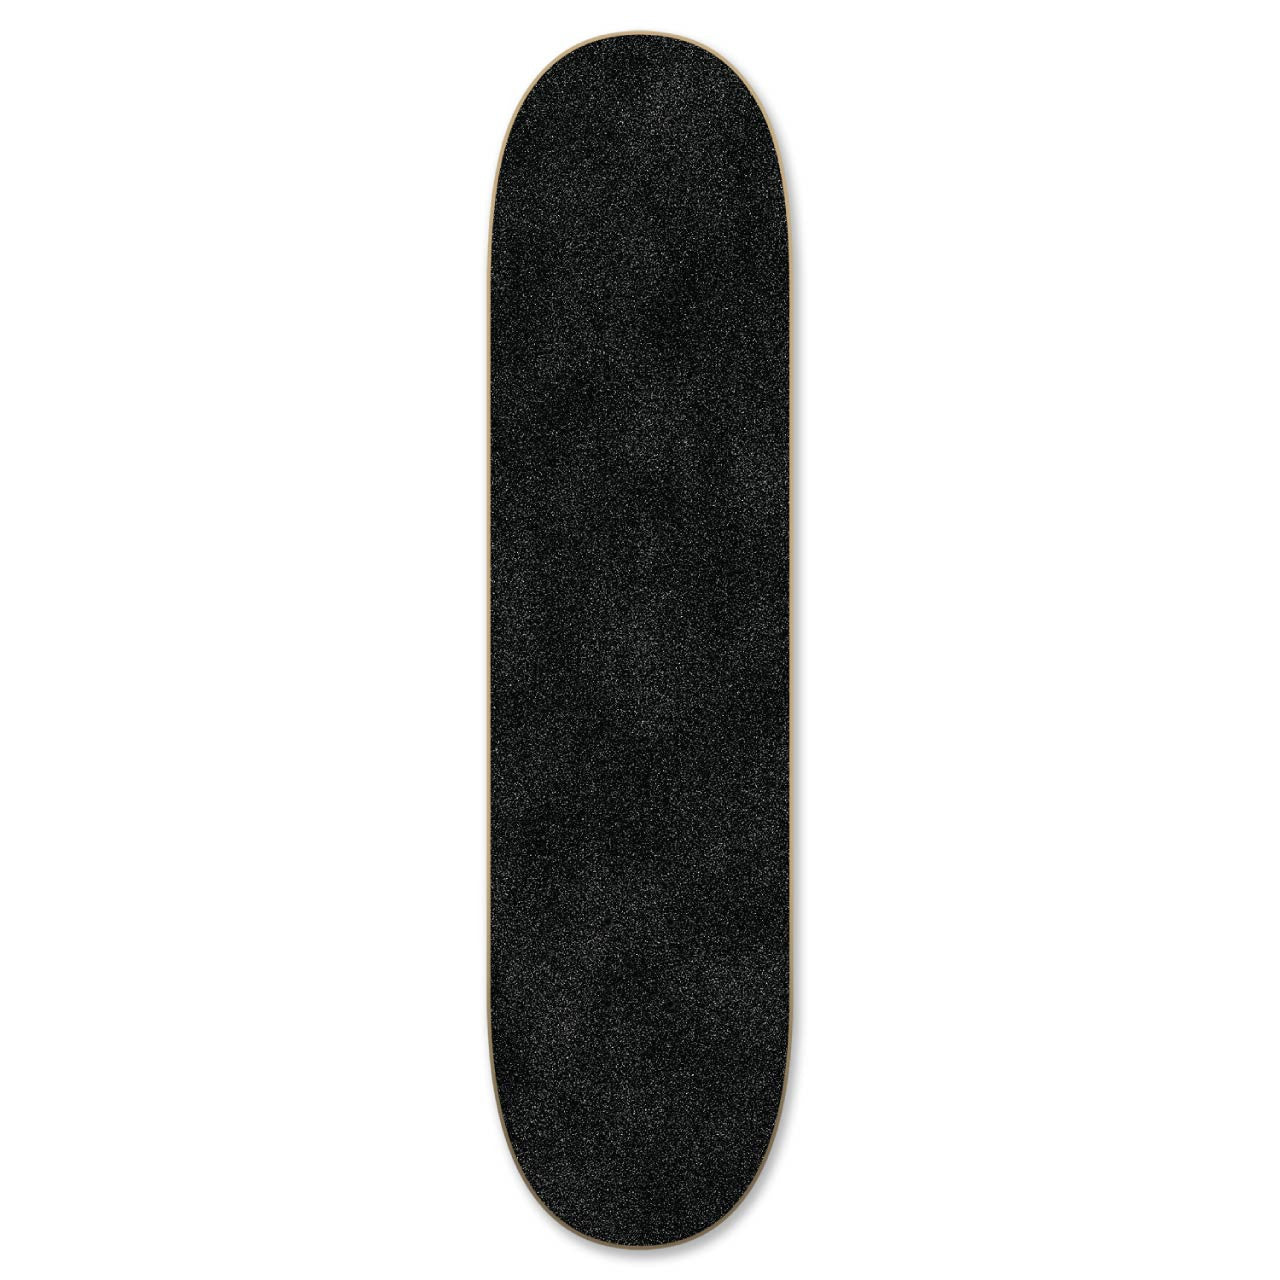 Graphic Natural Blind Justice Skateboard Deck